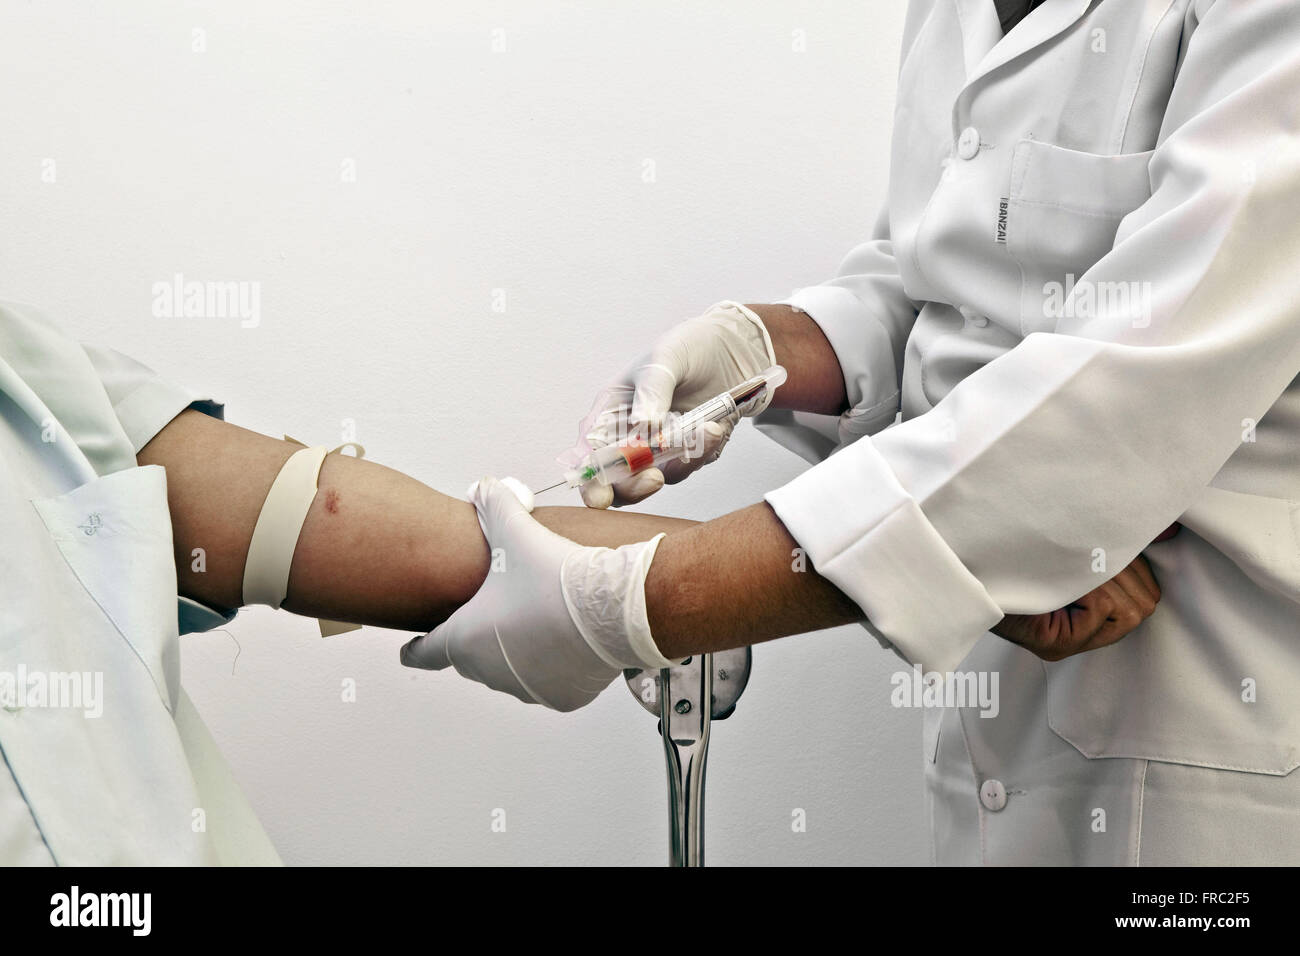 La collecte de sang d'un patient Infirmière Banque D'Images